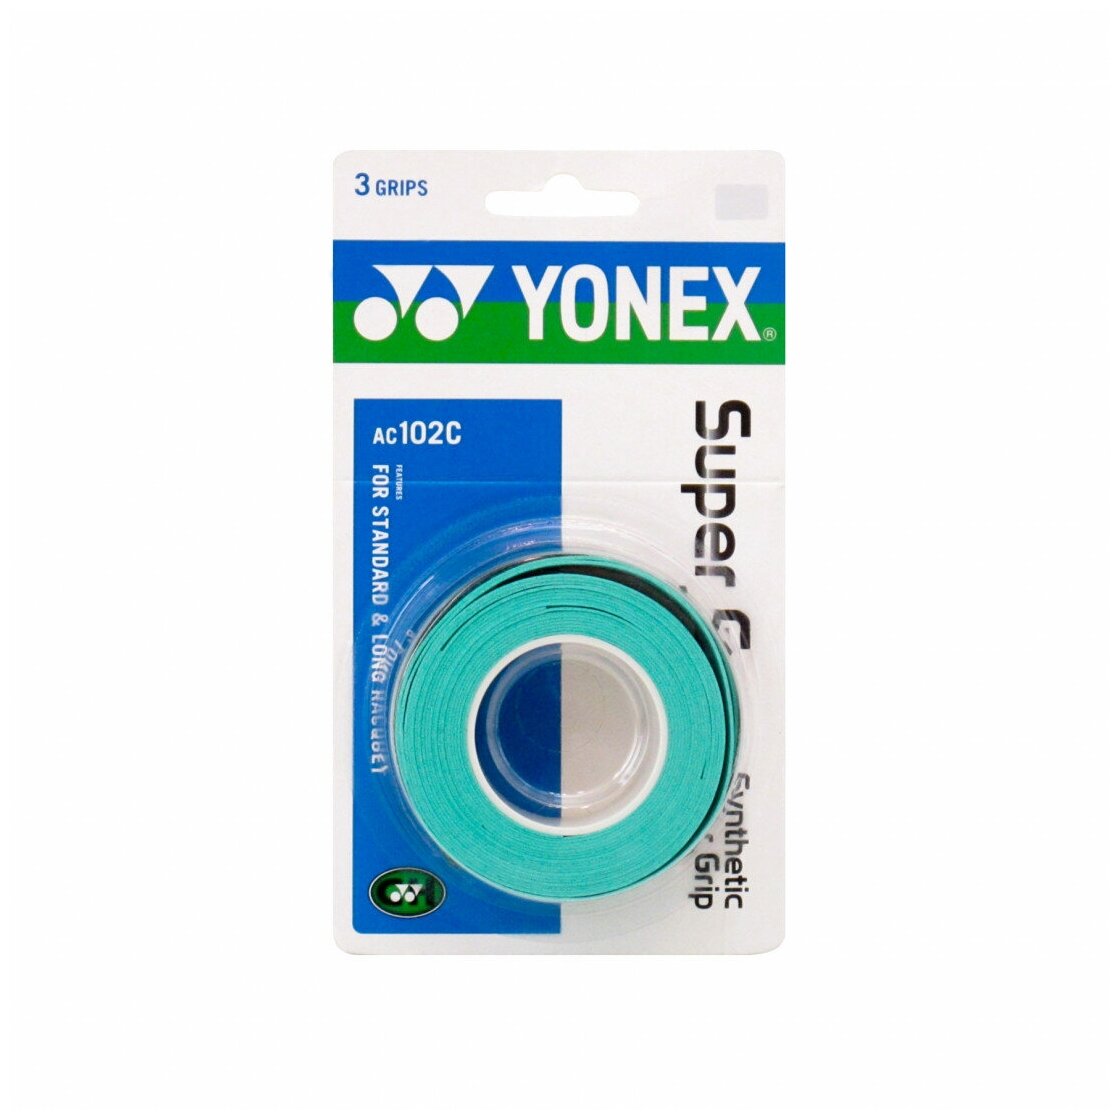 Намотка обмотка для ракеток Yonex AC102EX 3шт. Turquoise. Овергрип для ракеток.